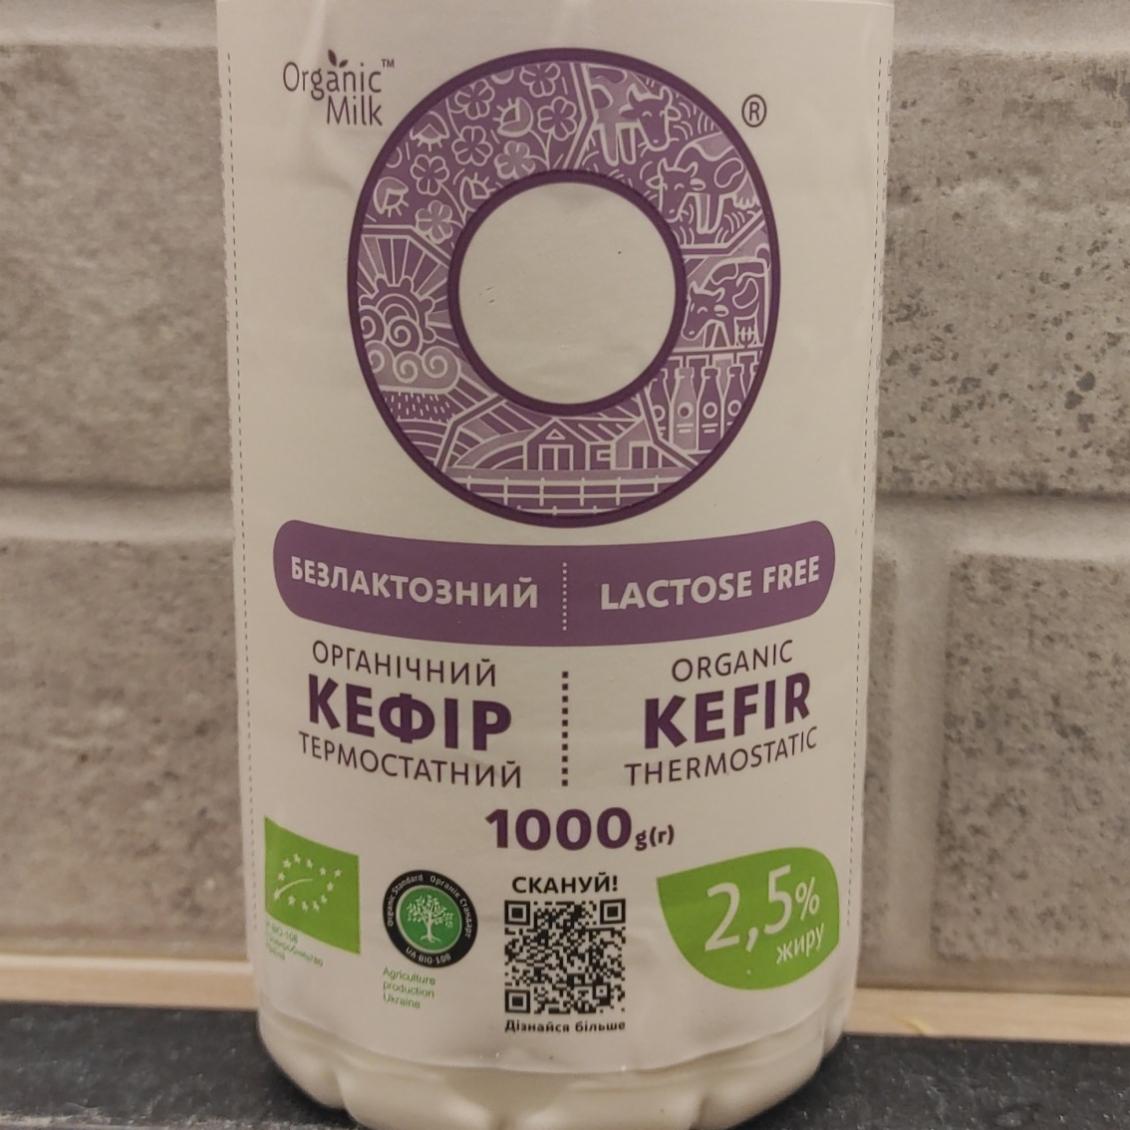 Фото - Кефир безлактозный органический термостатный 2.5% Organic Milk